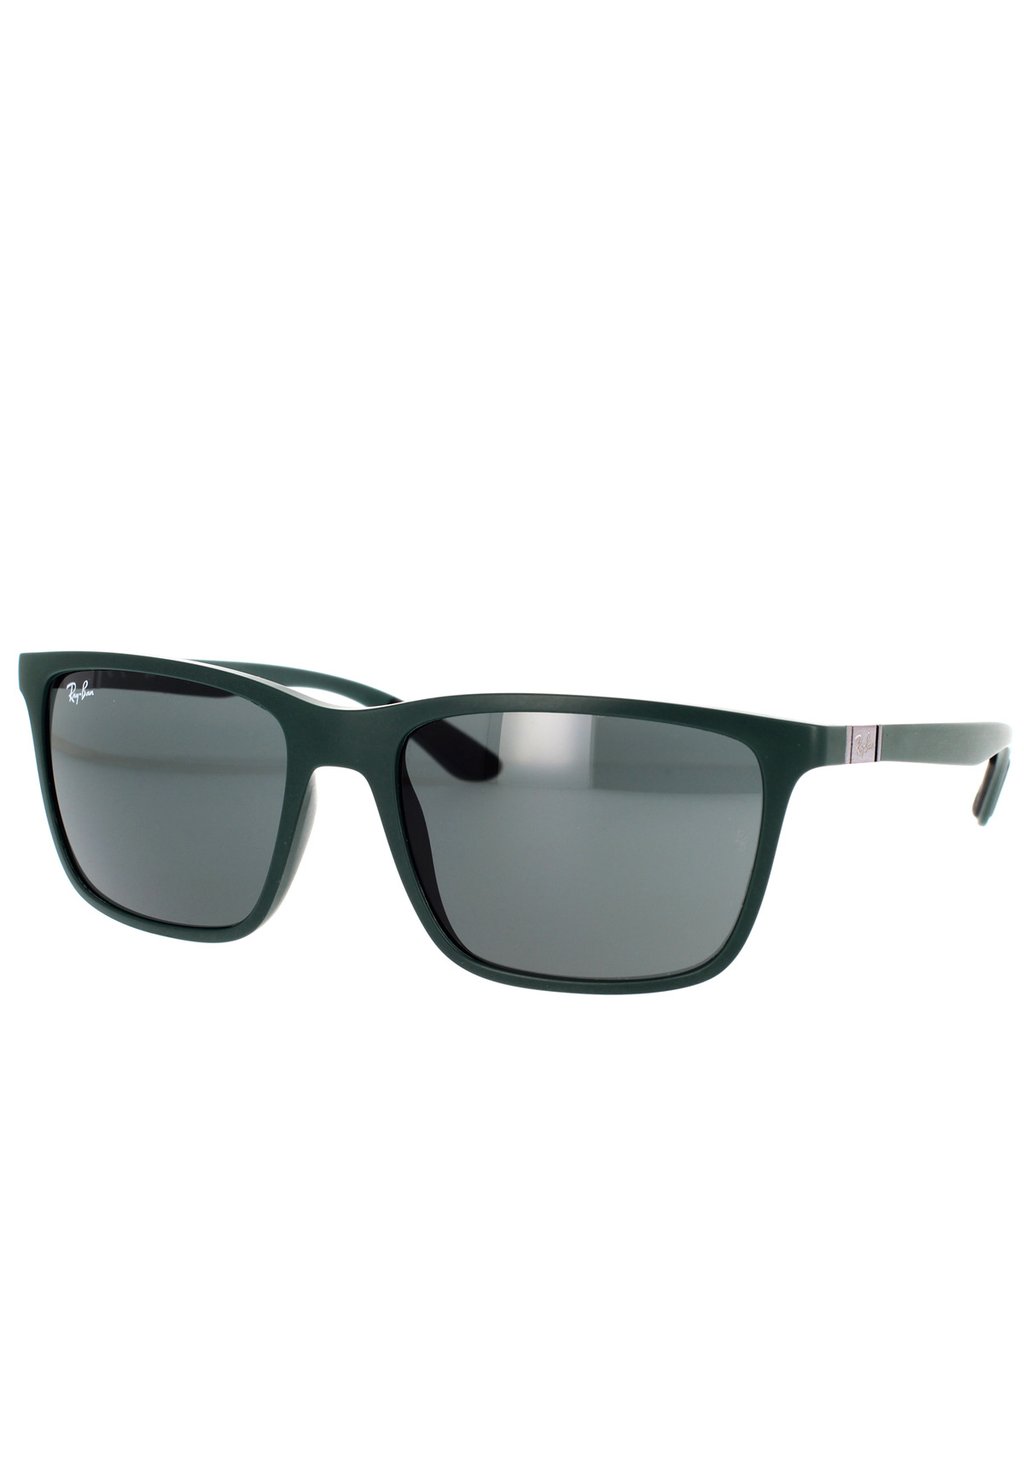 цена Солнцезащитные очки Ray-Ban, зеленые